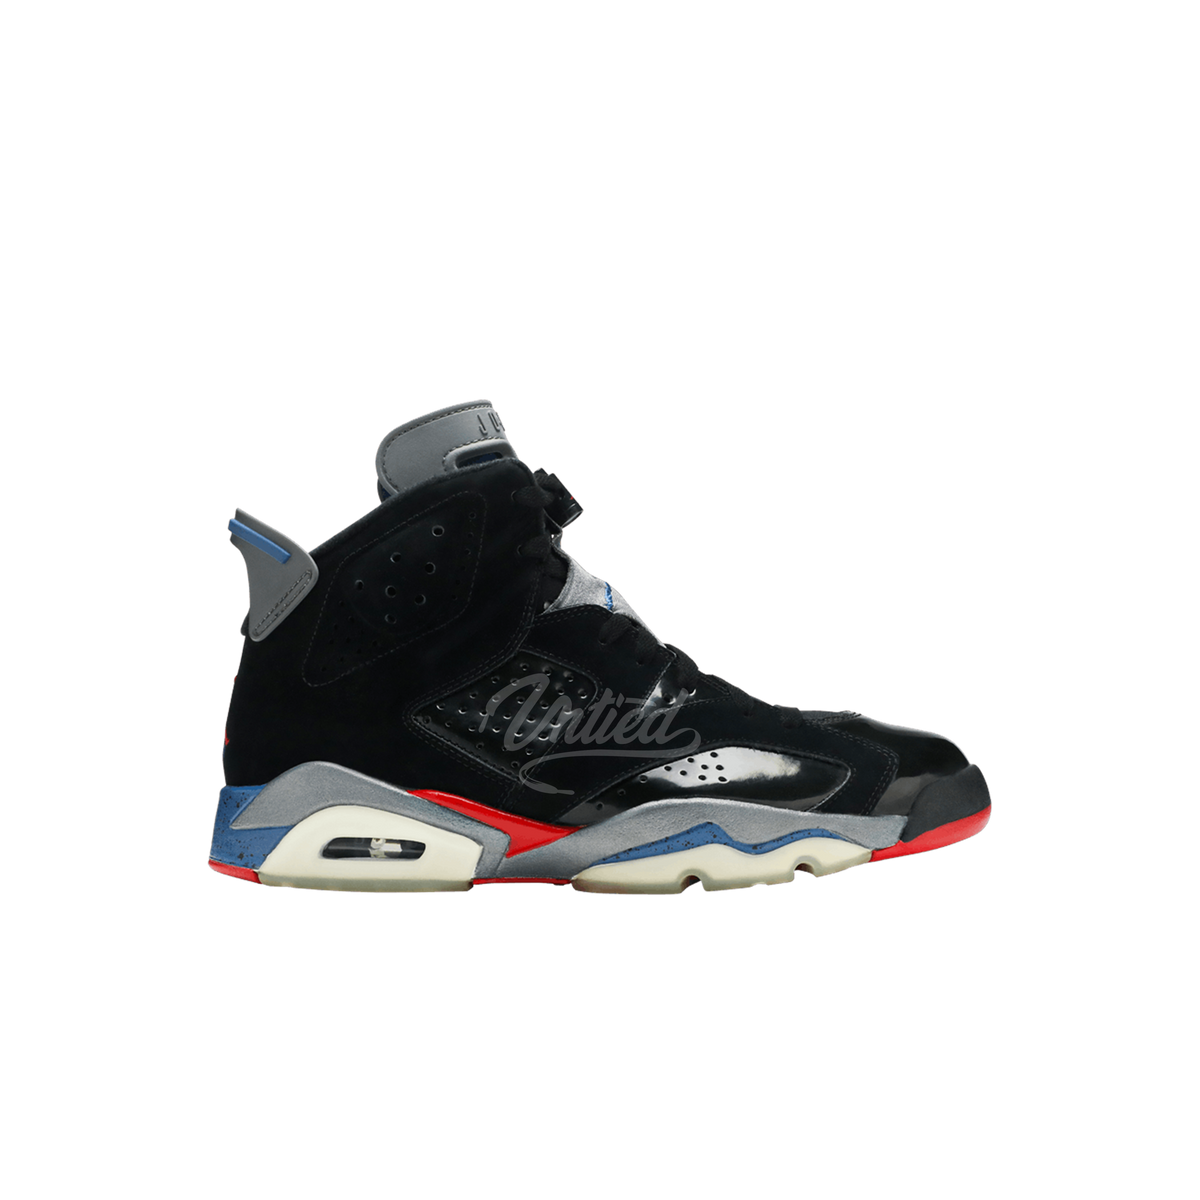 Air Jordan 6 "Pistons"